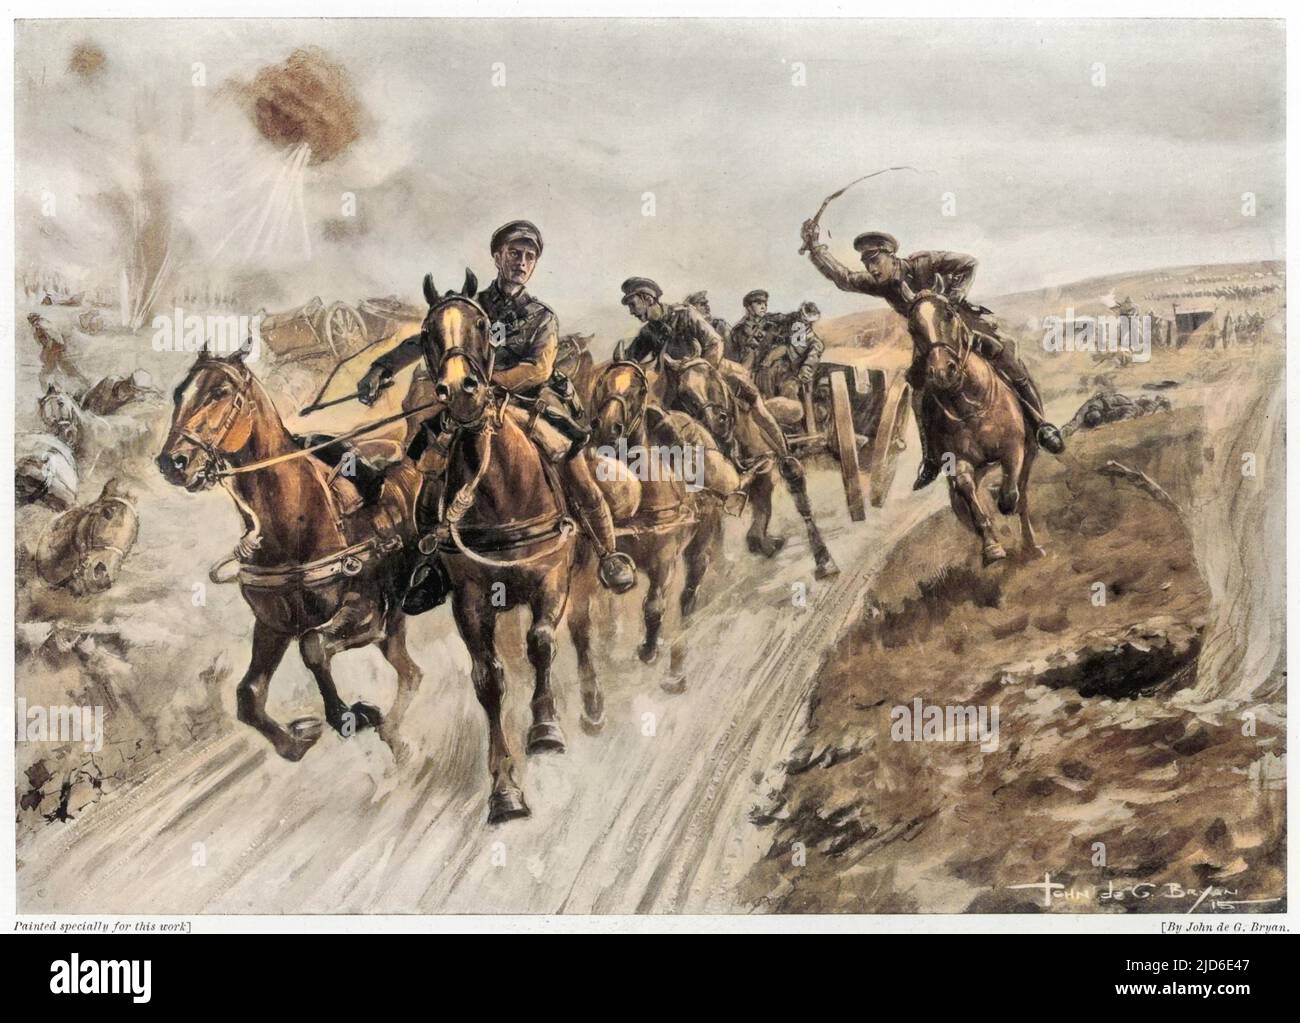 Da die deutschen Truppen fast die Artillerie in Le Cateau in Nordfrankreich erreichen, führt Kapitän Douglas Reynolds eine heldenhafte Nachhut-Aktion an. Nachdem zwei Teams von Pferden in der Hoffnung, mindestens zwei Gewehre zu retten, aufgezogen wurden, wurde ein Team von Männern schnell abgeschossen. Reynolds, mit den Fahrern Frederick Luke, Job H.C. Drain und Gobley starten mit einer Pistole. Gobley wurde schnell getroffen, aber als Reynolds neben dem jetzt ungeführten Mittelhortenpaar ritt, wurde die Waffe gerettet. Reynolds, Luke und Drain wurden für ihre heldenhaften Taten mit Victoria-Kreuzen ausgezeichnet. Reynolds starb nach einer Verwundung im Jahr 1 Stockfoto